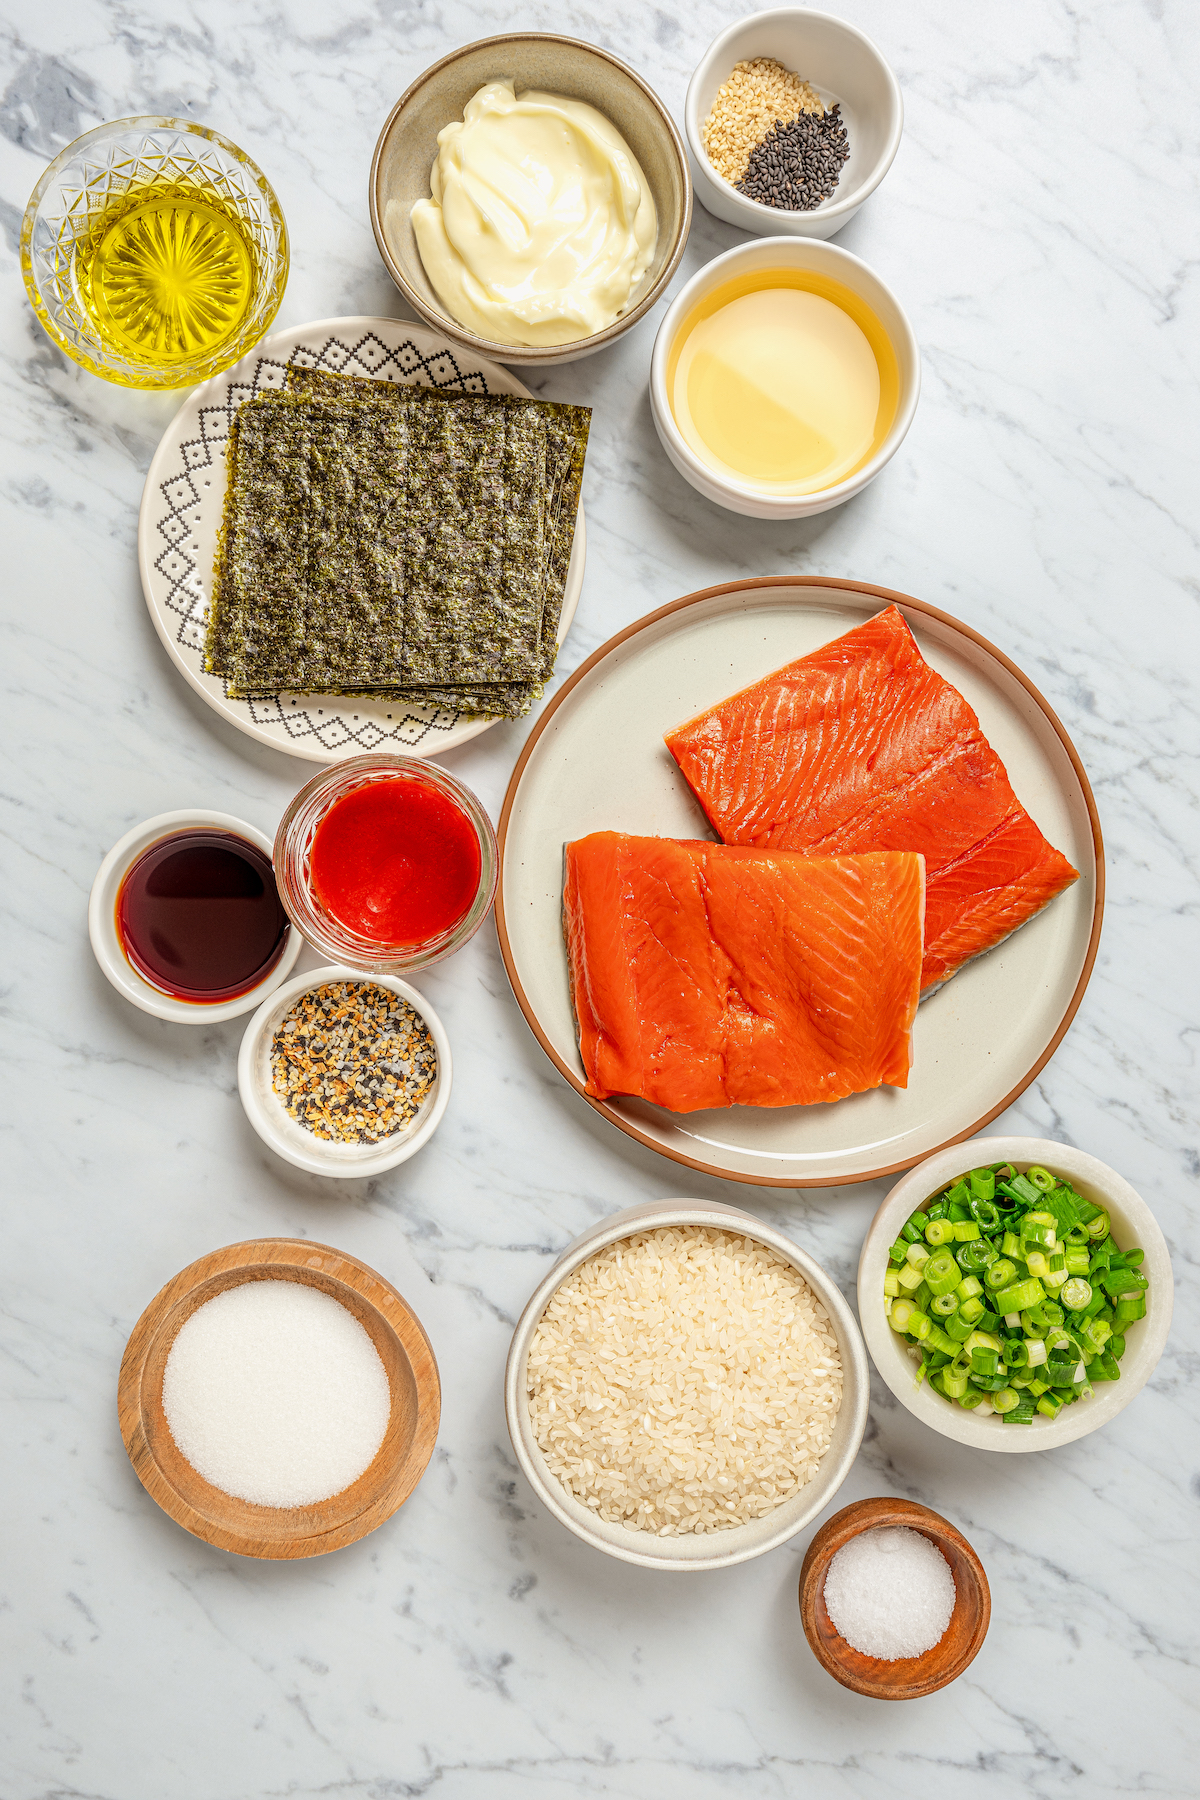 Ingredients for salmon sushi bake.